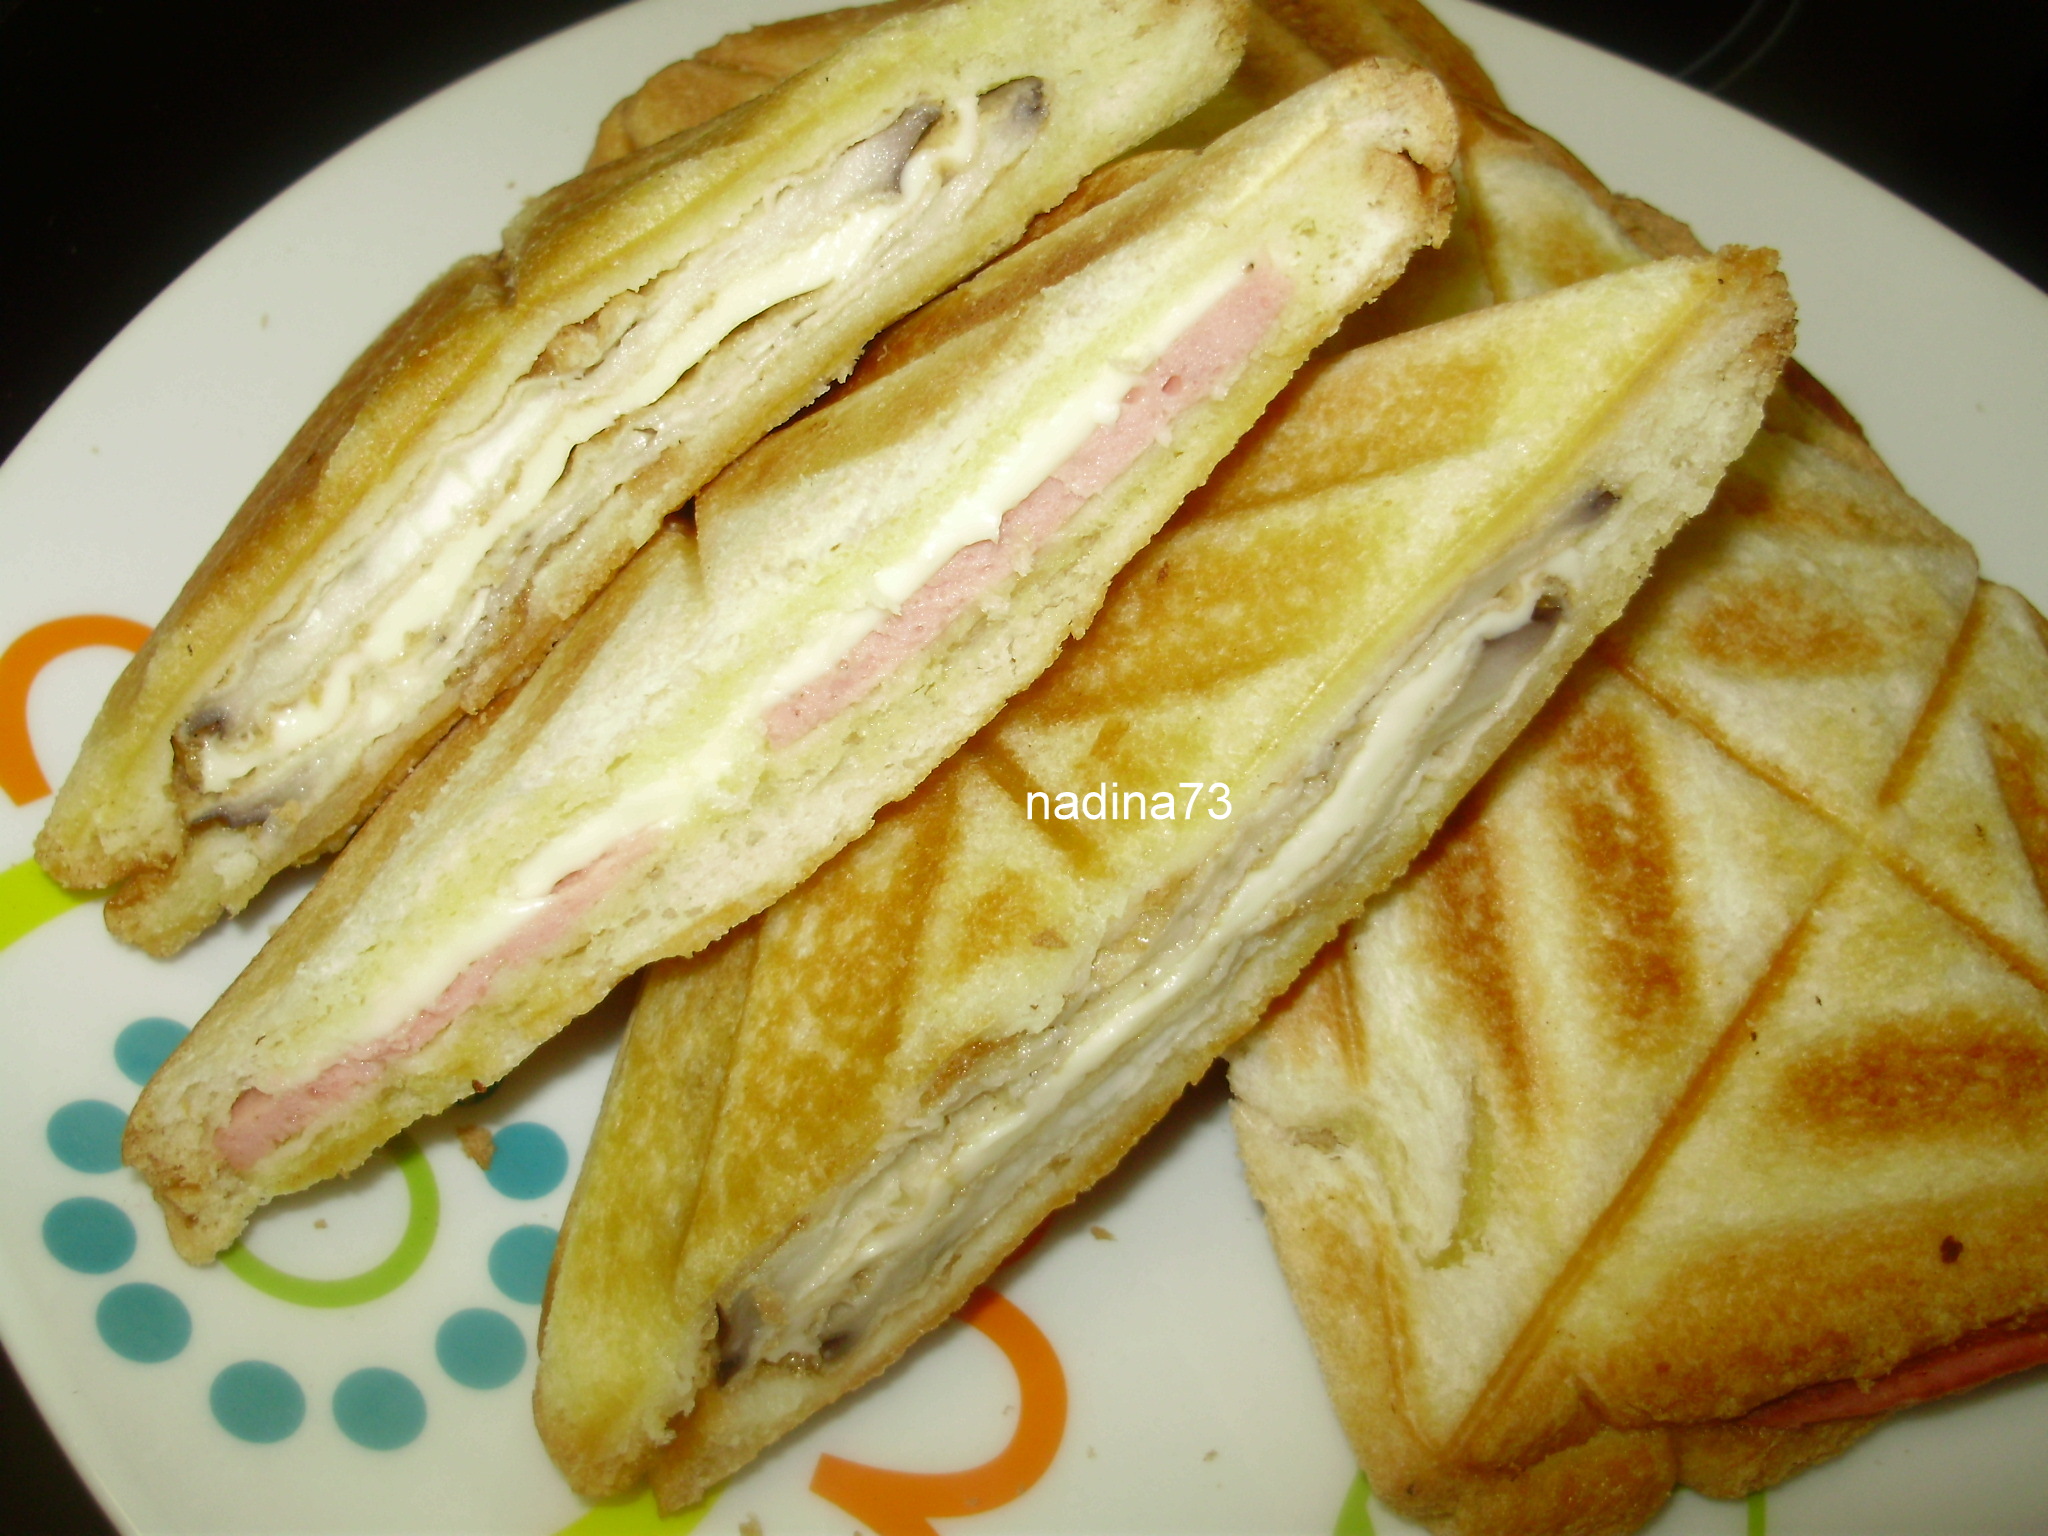 Sandwich-uri  calde cu vinete pane sau cu   mozzarella